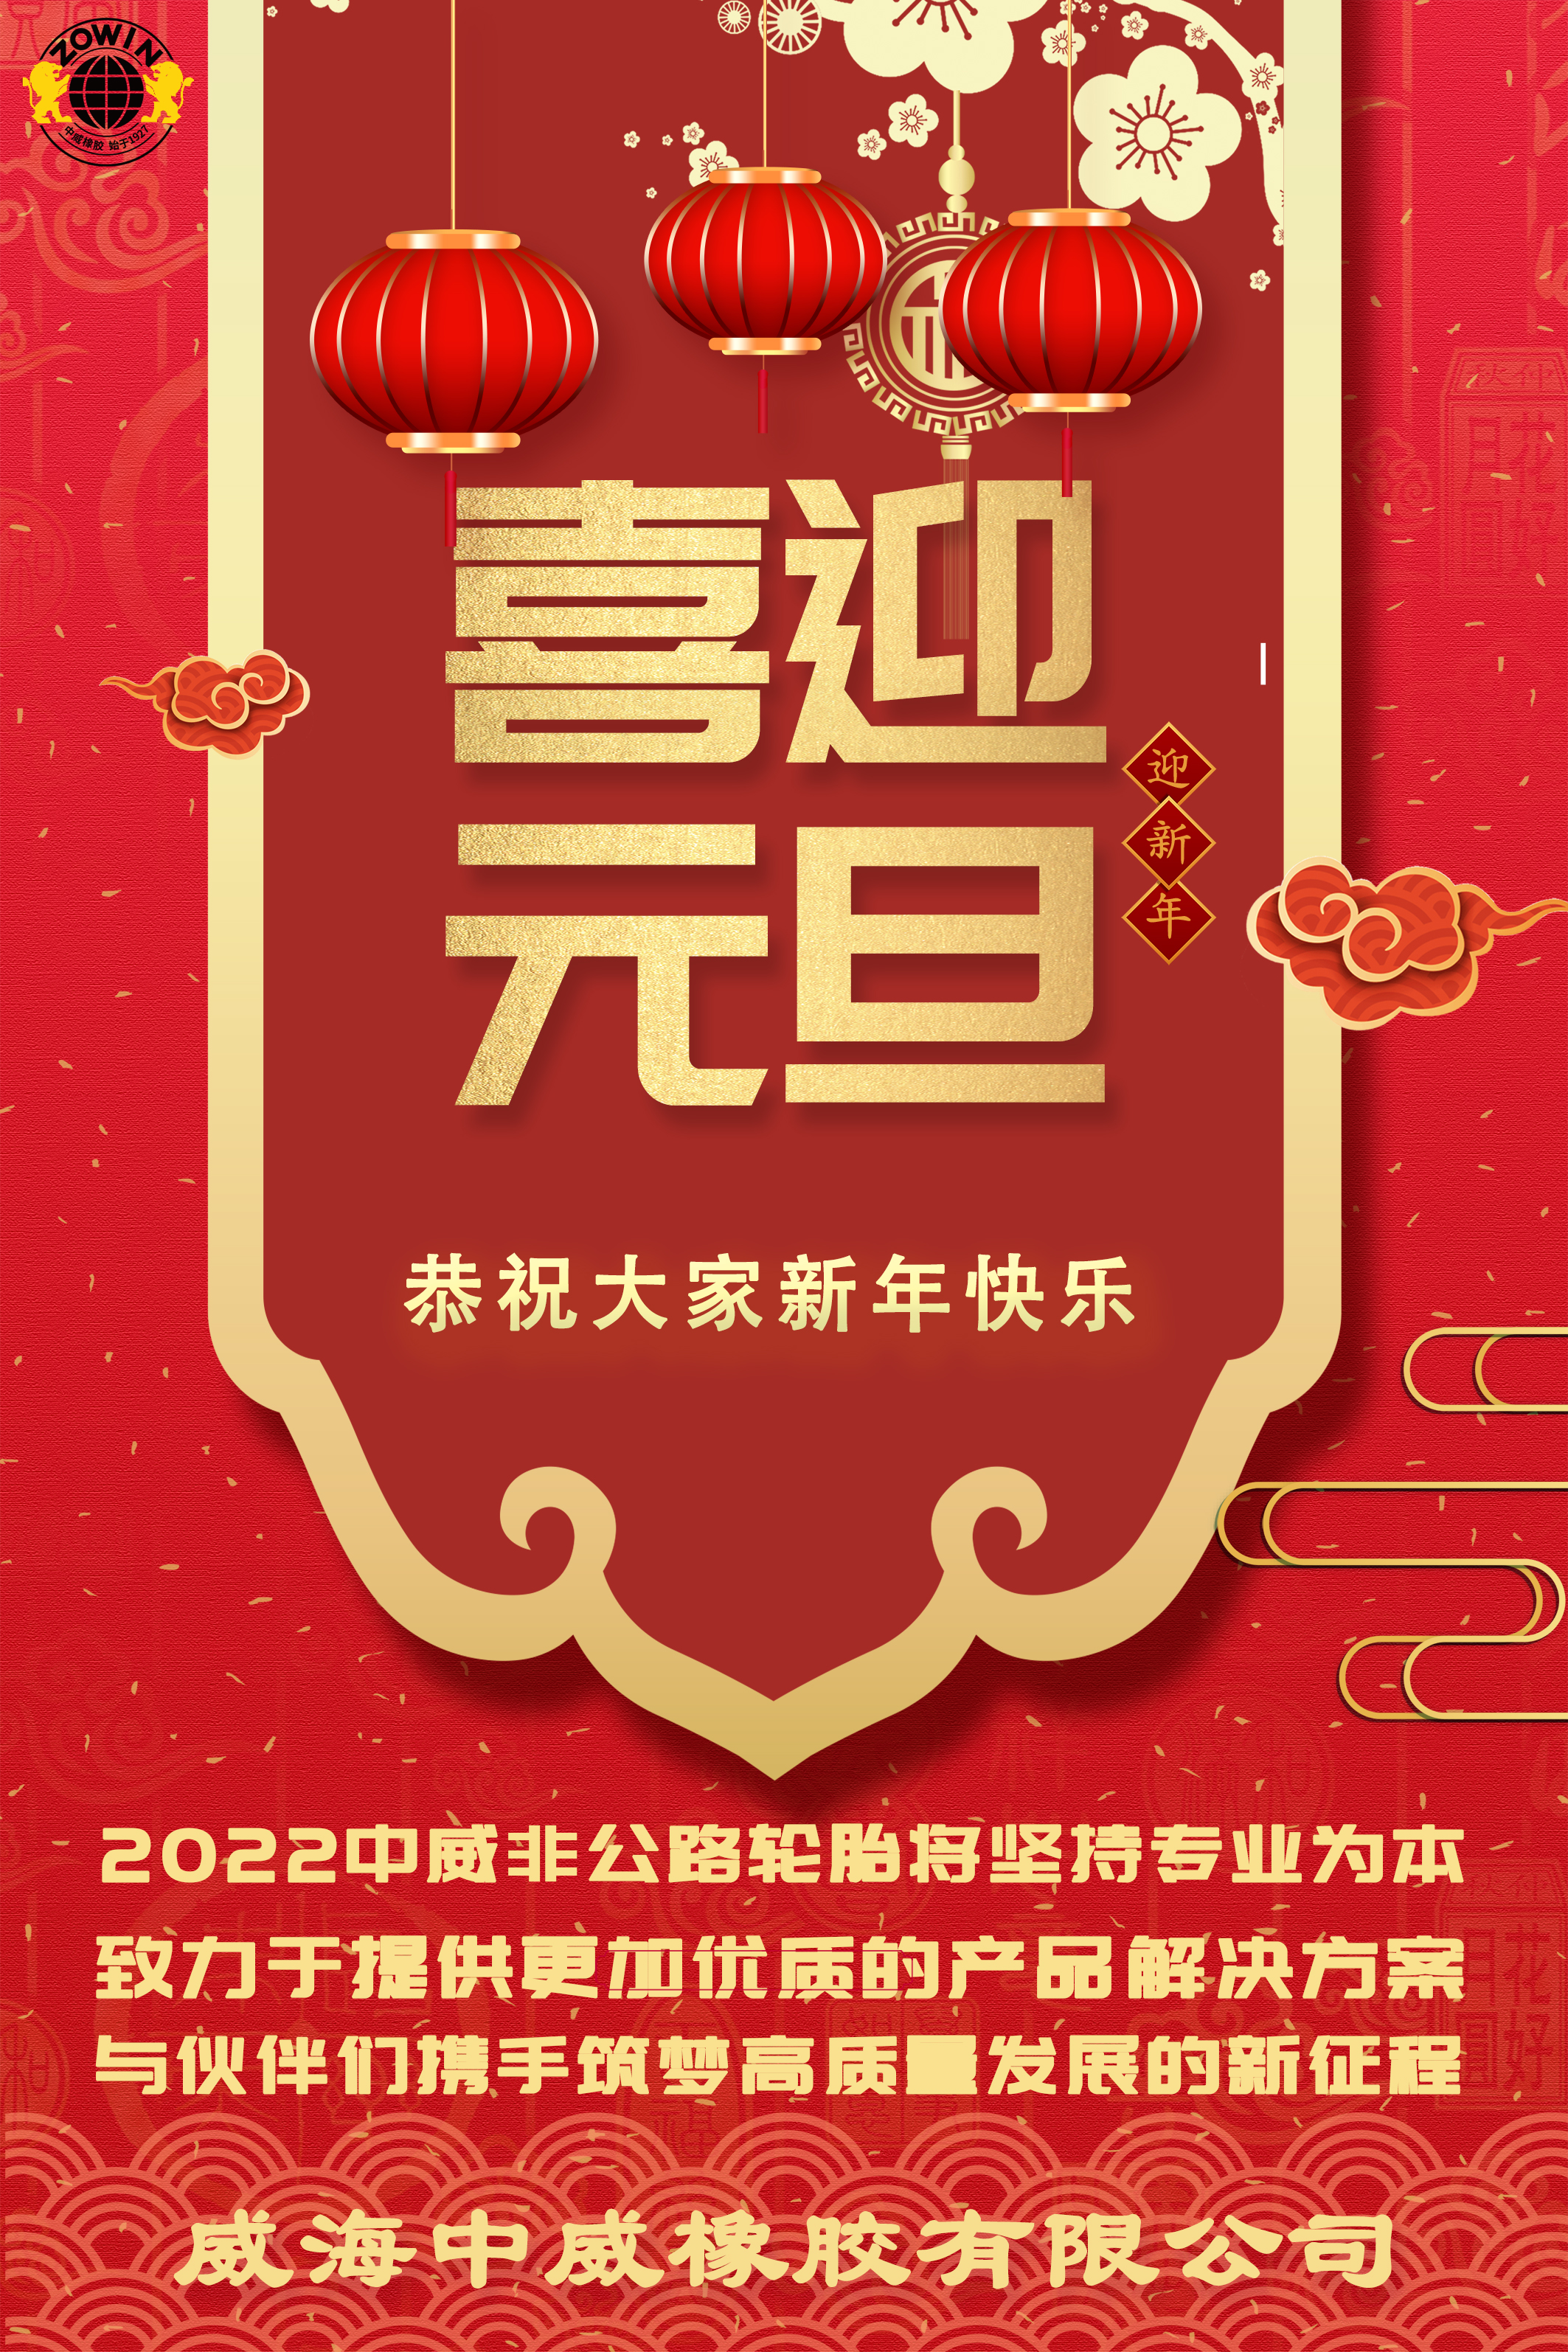 乐鱼电子官网(中国)官方网站恭祝大家2022年元旦快乐